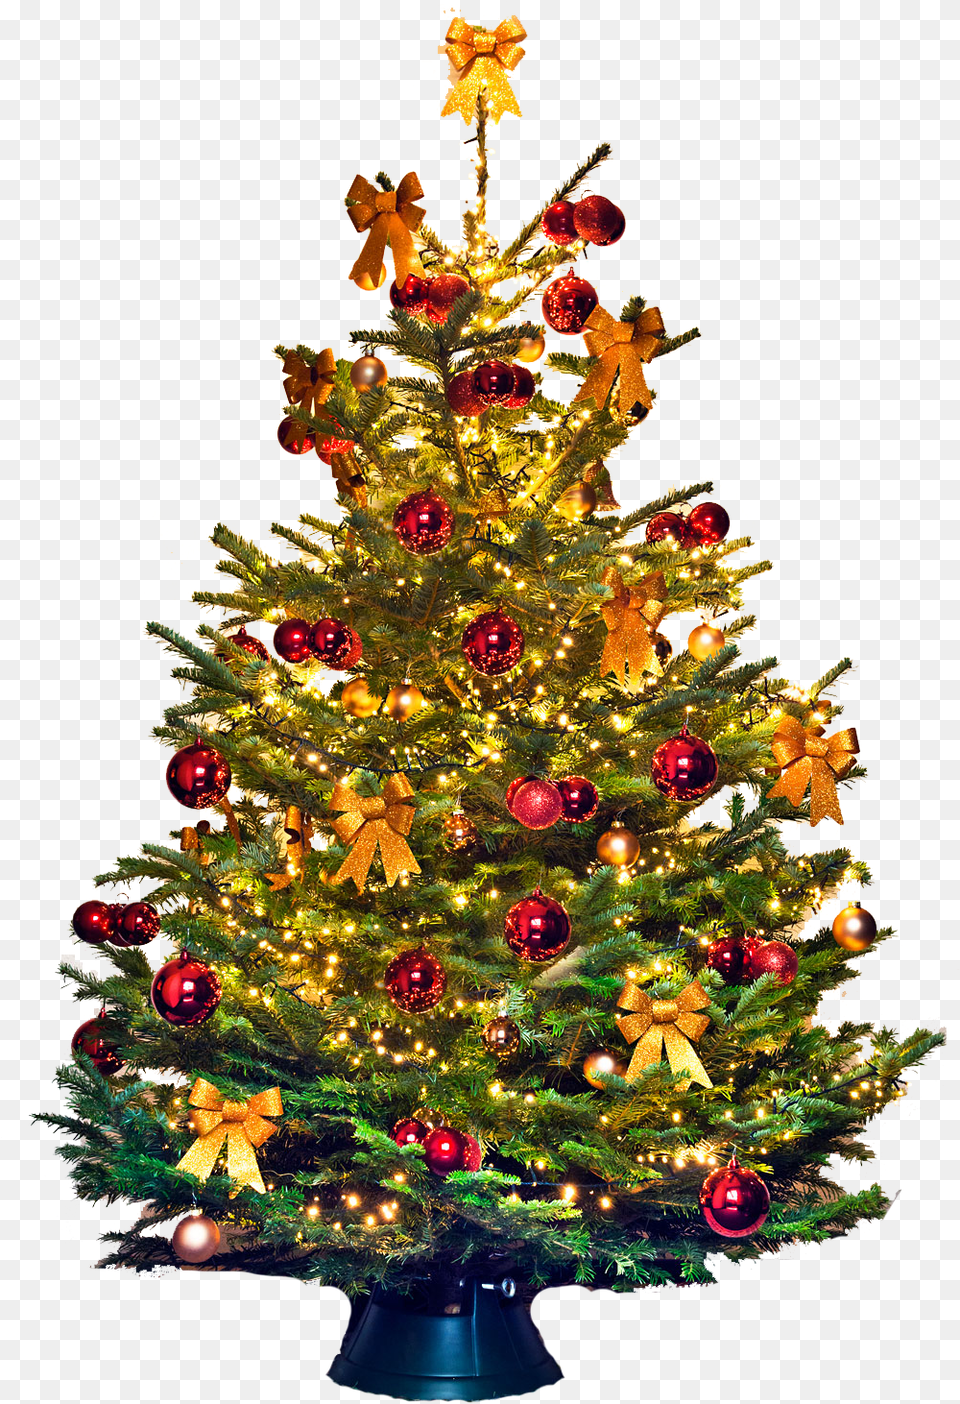 Christmas Tree Vector Christmas Tree, Plant, Christmas Decorations, Festival, Christmas Tree Free Png Download